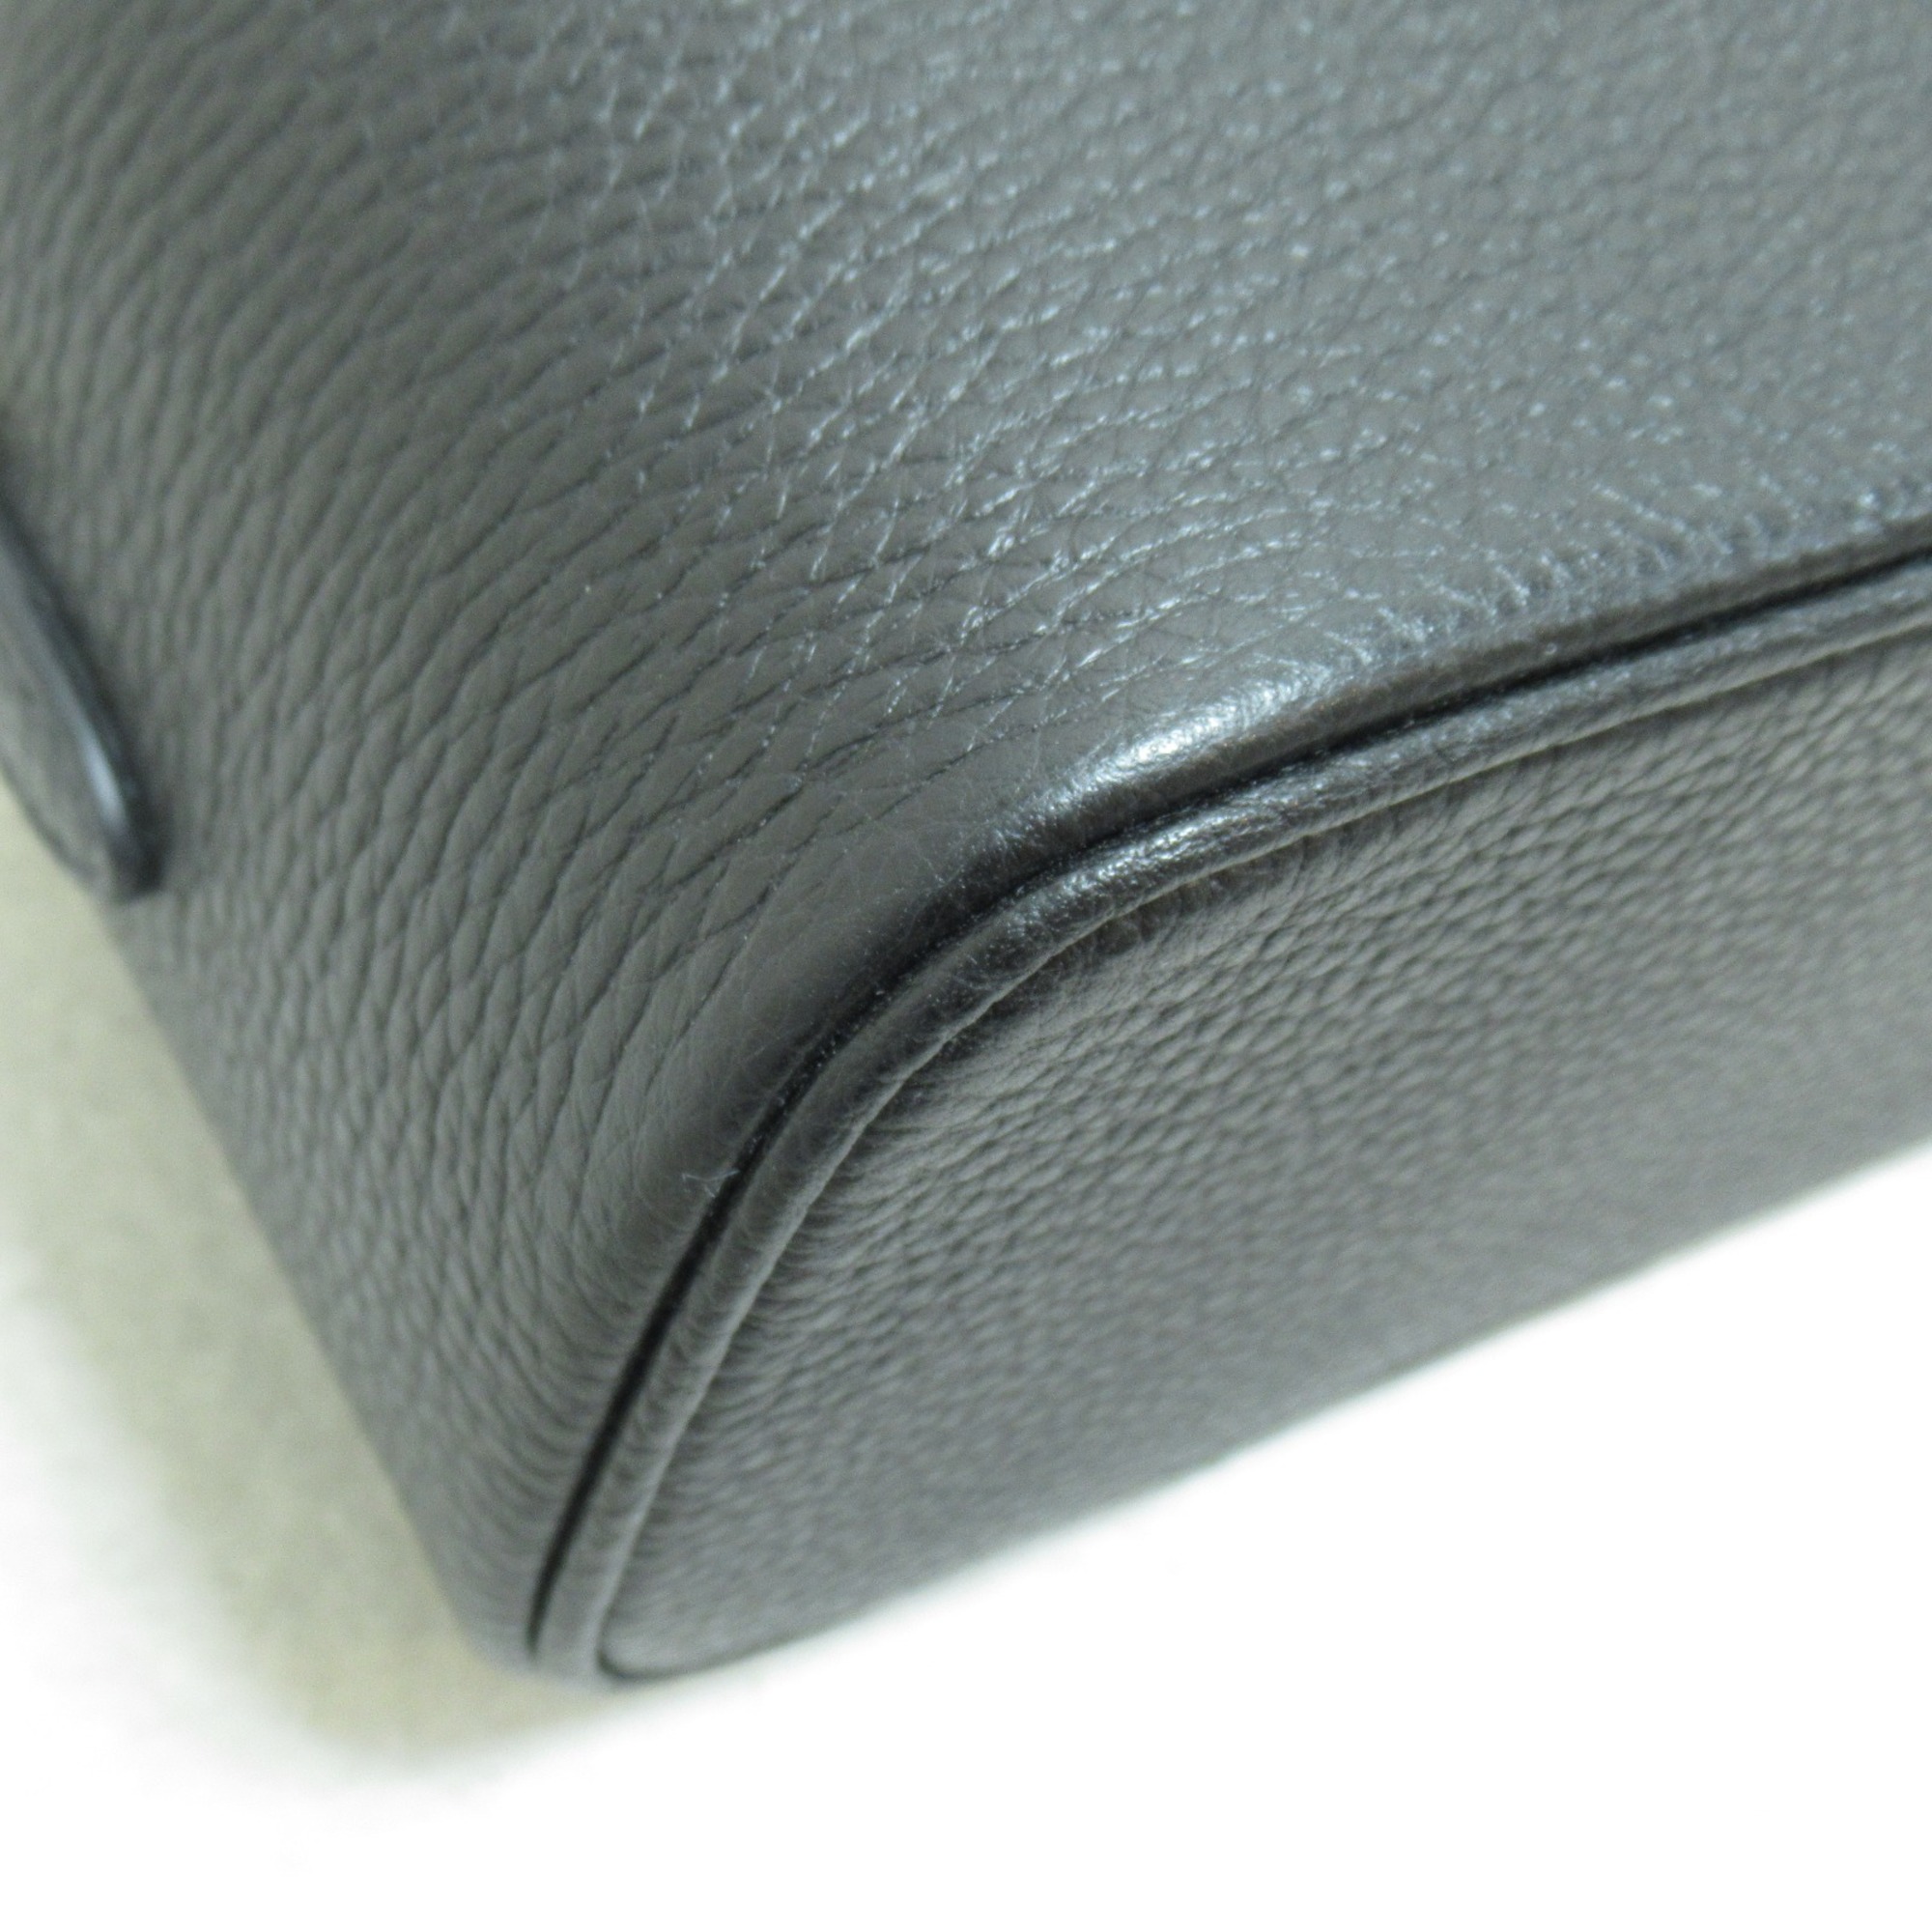 PRADA Leather Mini Bag Shoulder Bag Black leather 1BH202VOOM2DKVF0632